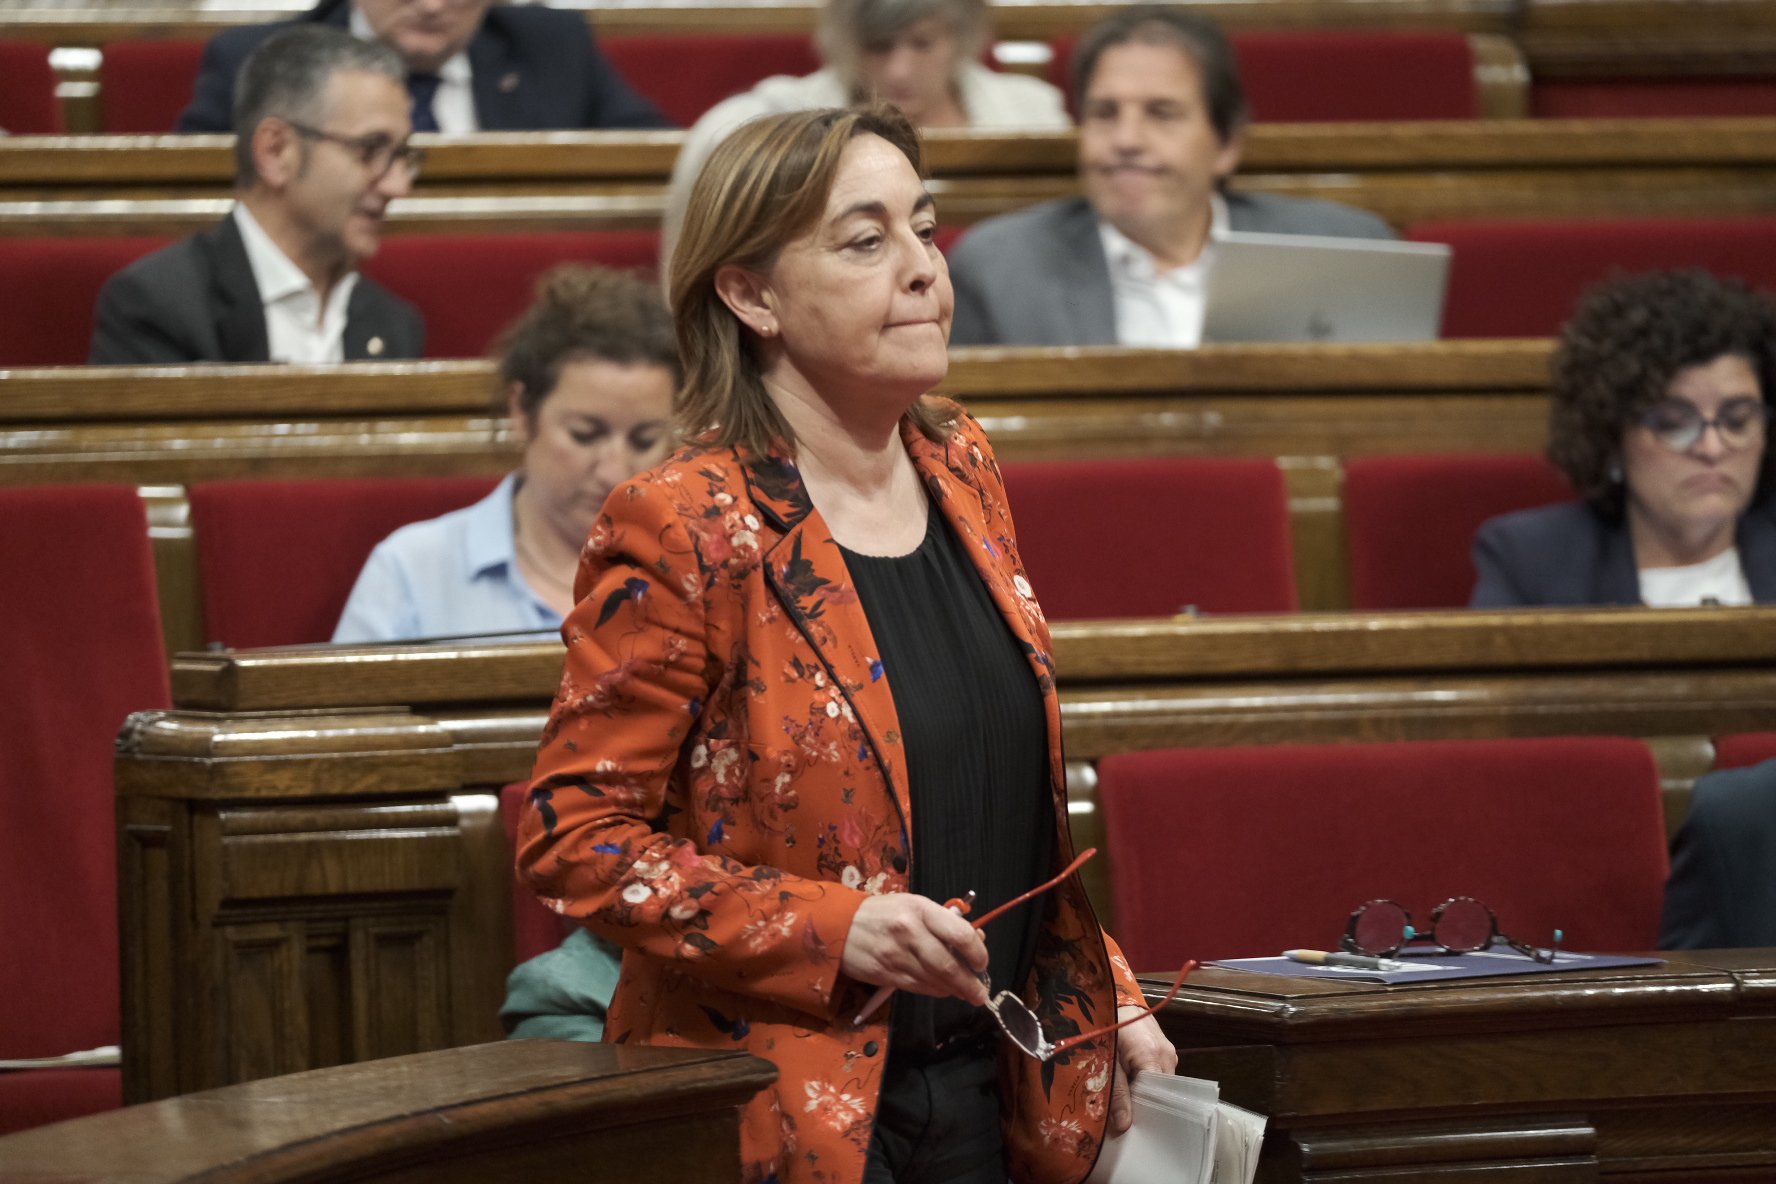 Retrets del PSC a Aragonès malgrat l’acord per la sequera: “Quatre setmanes d'inacció i silenci”